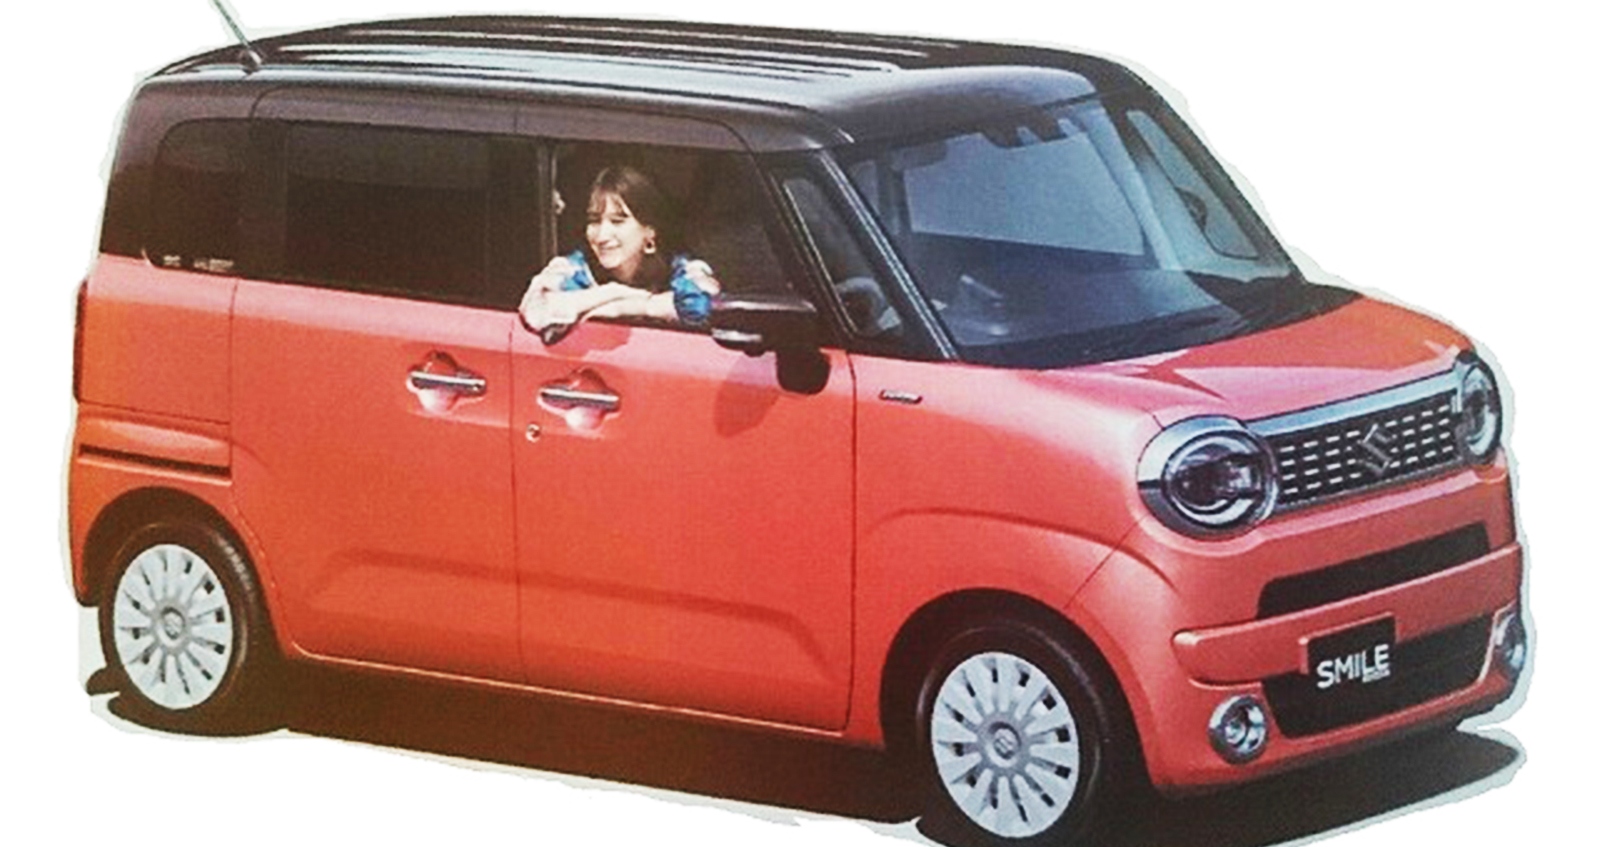 เผยภาพ Suzuki Wagon R Smile เอาใจสาวๆ ก่อนเปิดตัว 27 สิงหาคมในญี่ปุ่น